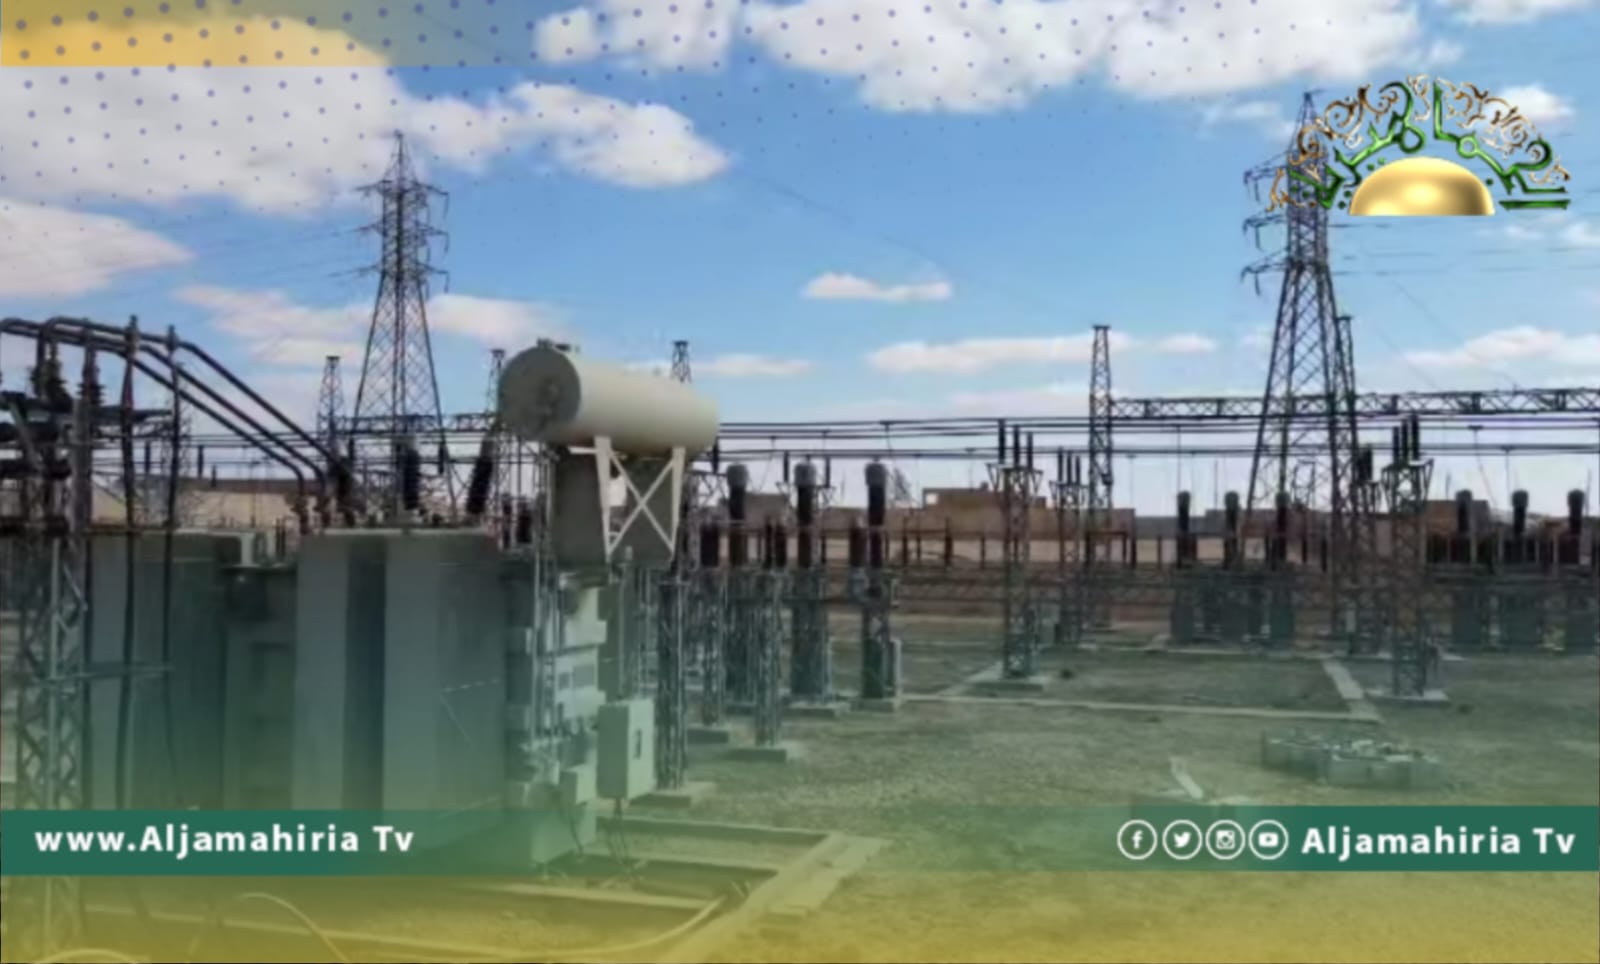 الشركة العامة للكهرباء: استكمال إعادة تأهيل محطة كهرباء الزنتان القديمة